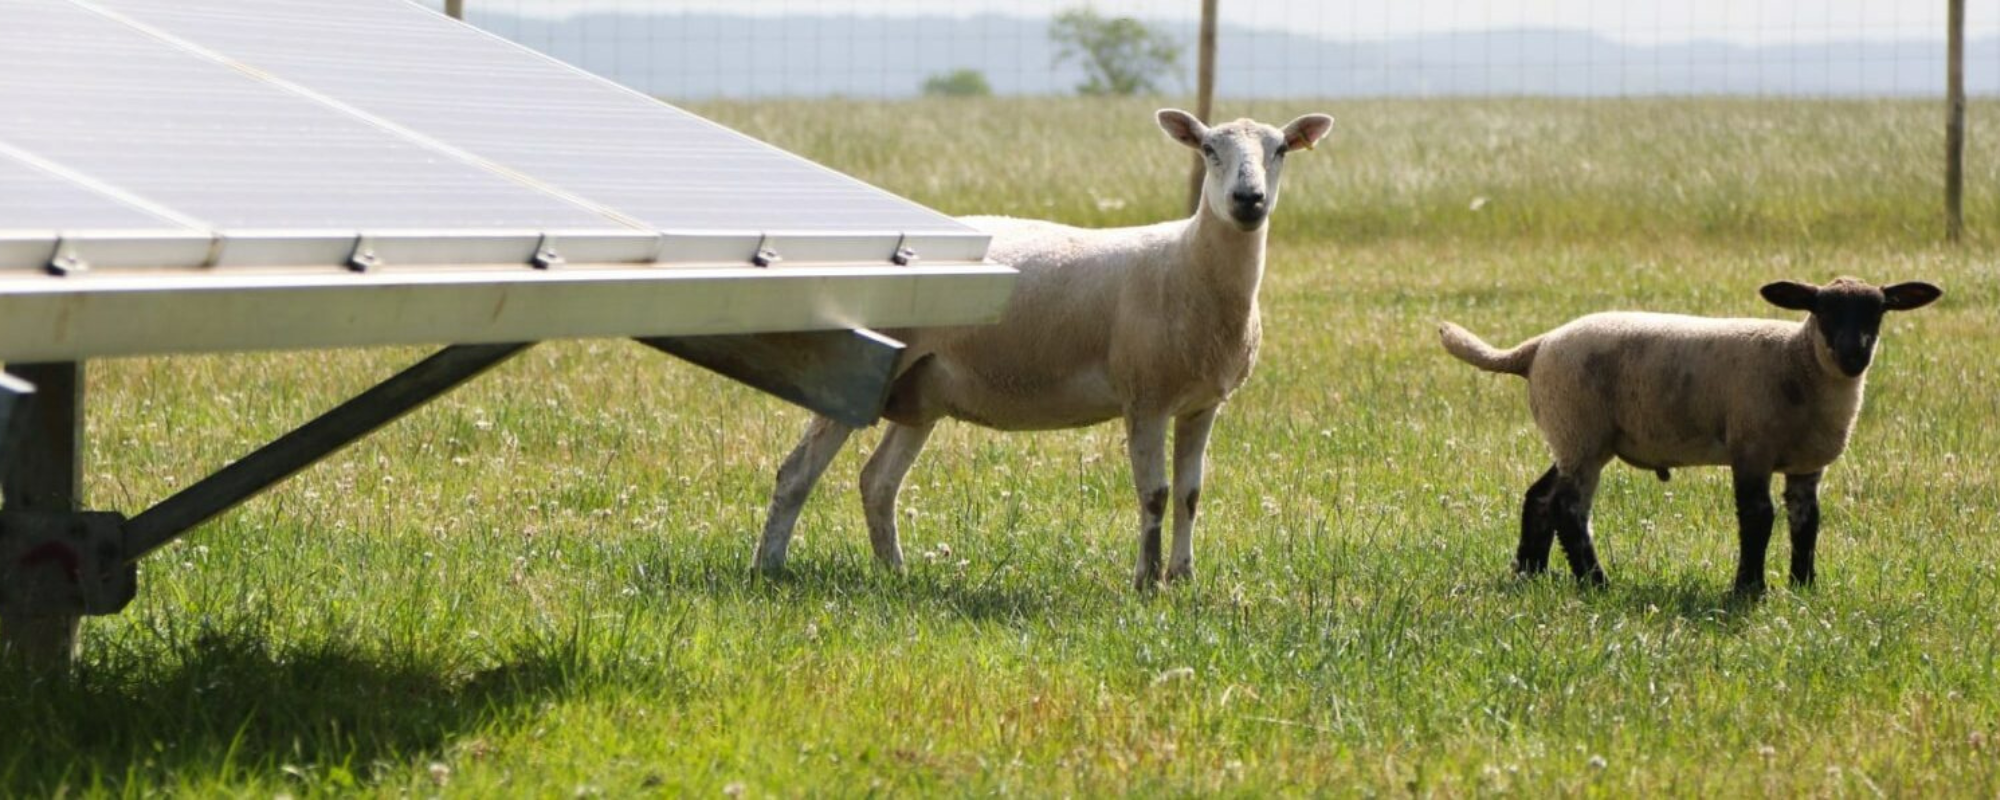 sheep behind solar panels